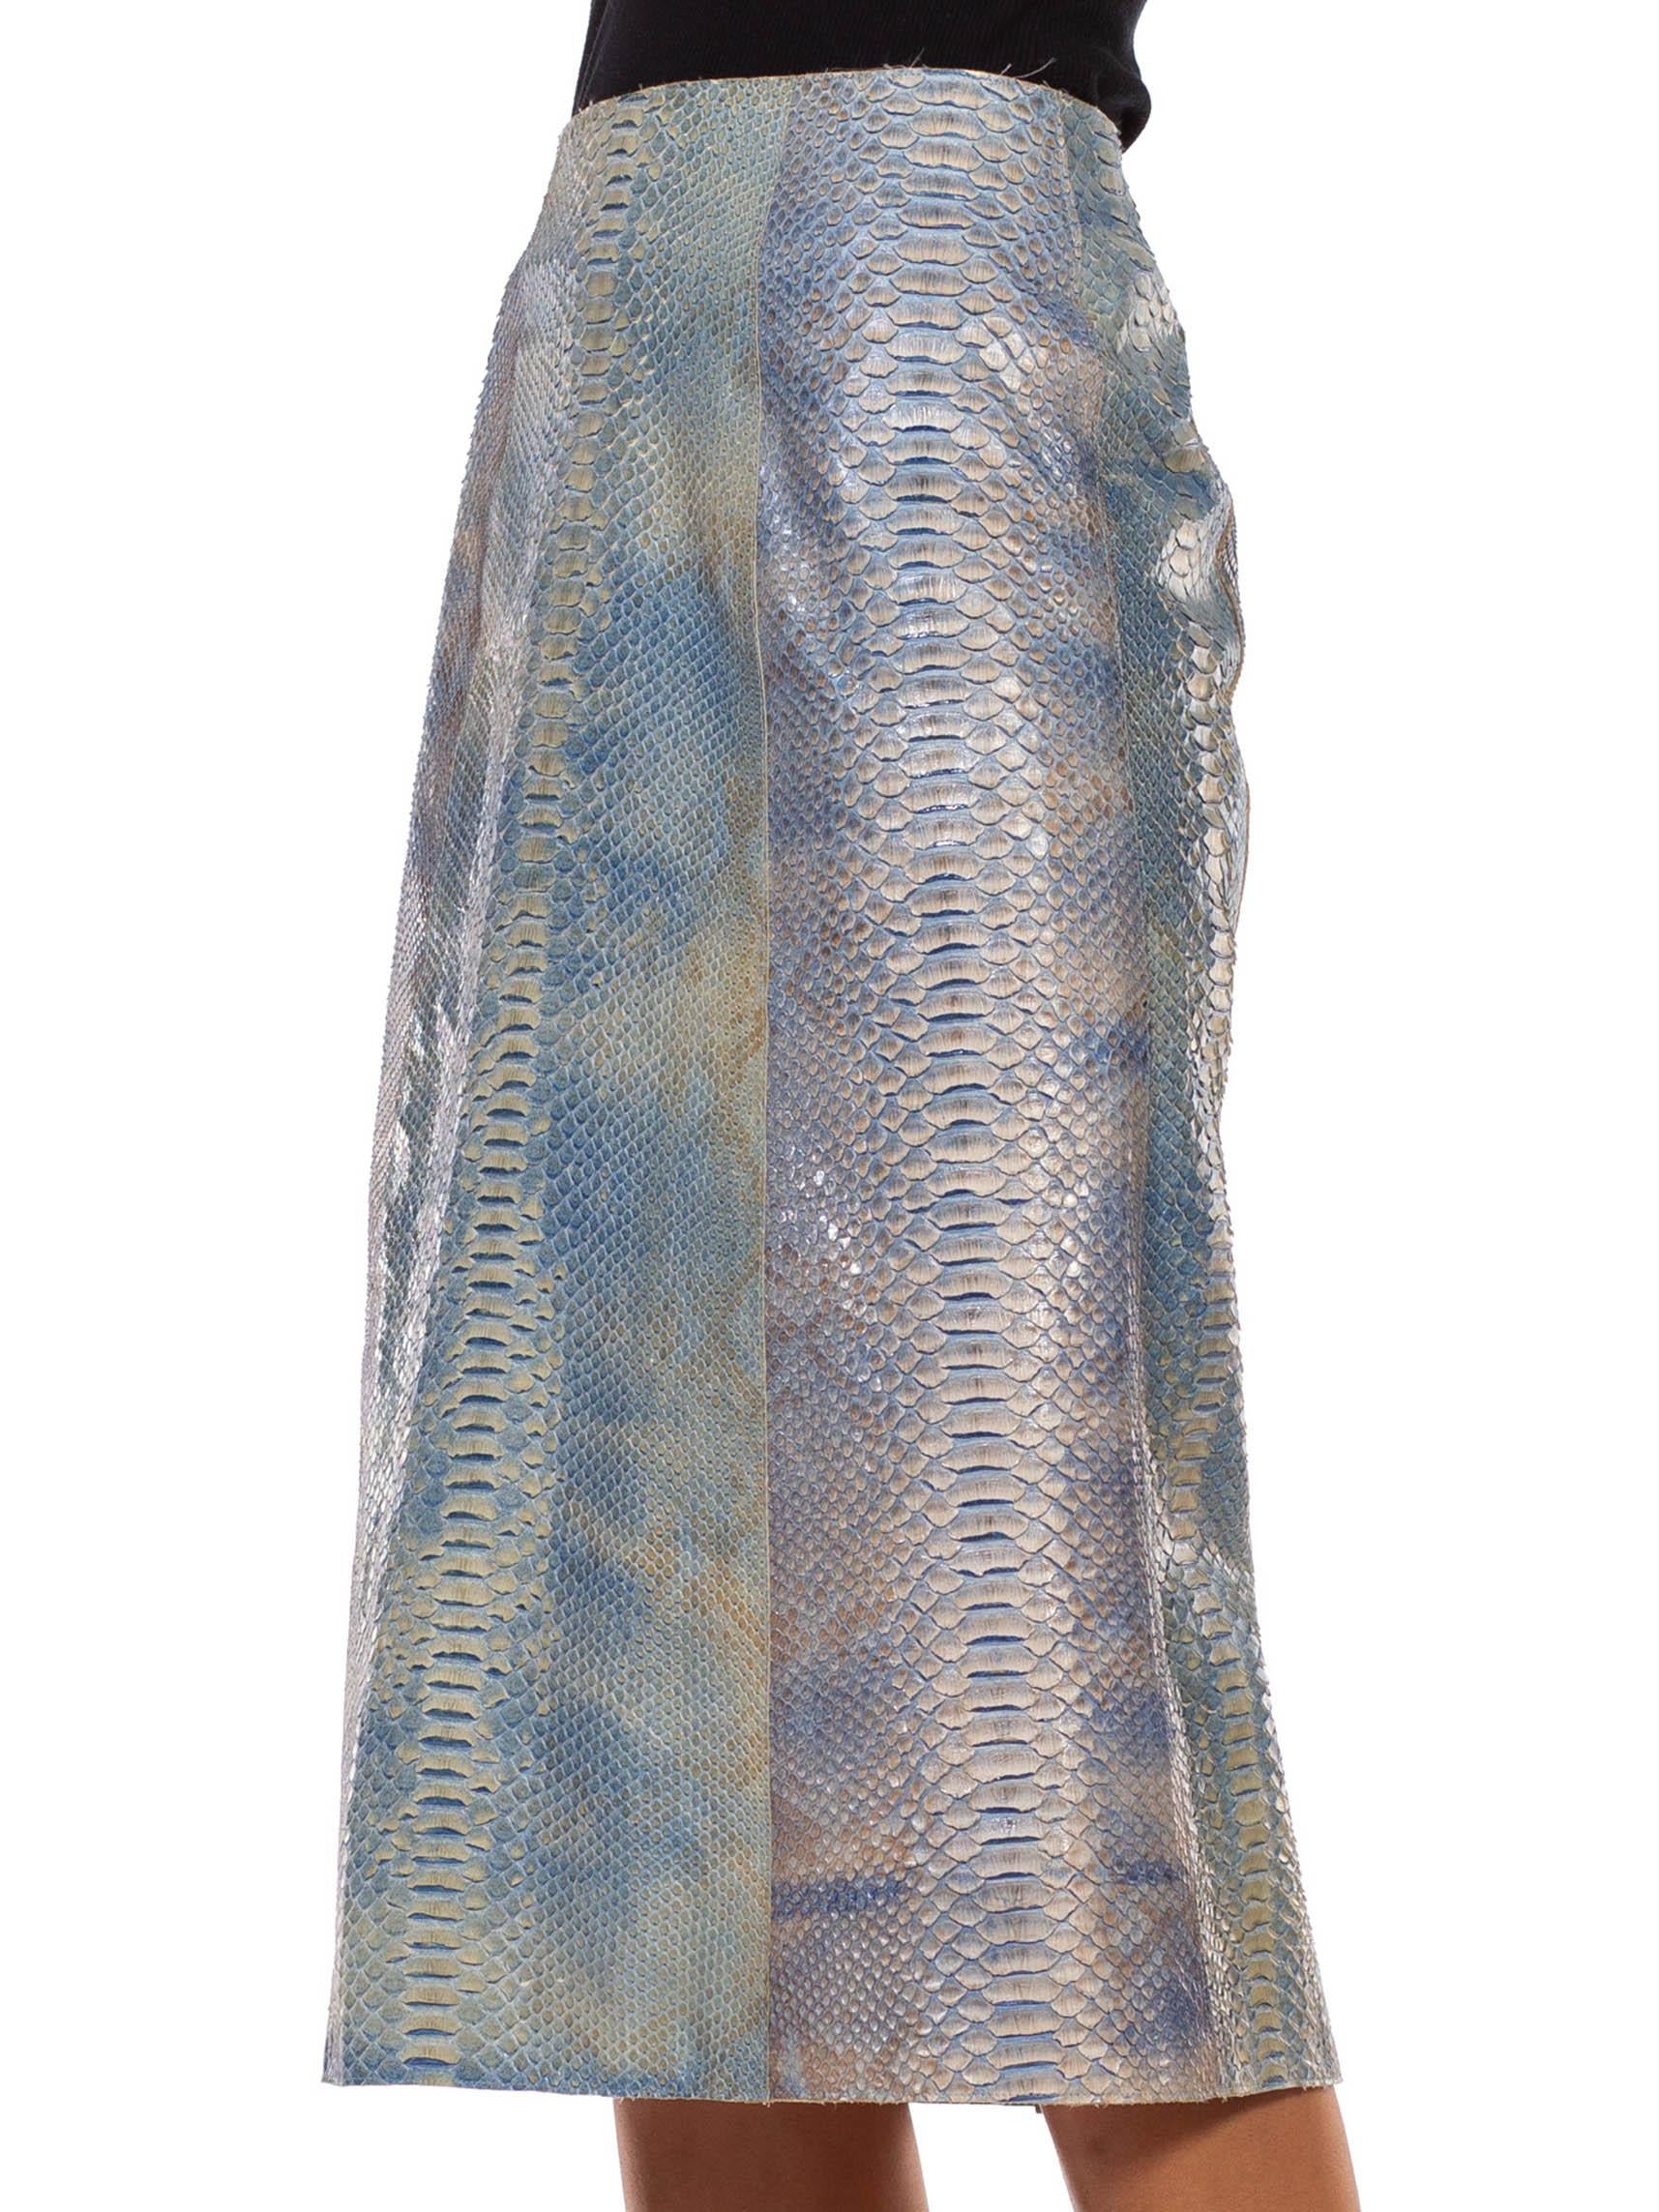 snake skin print skirt